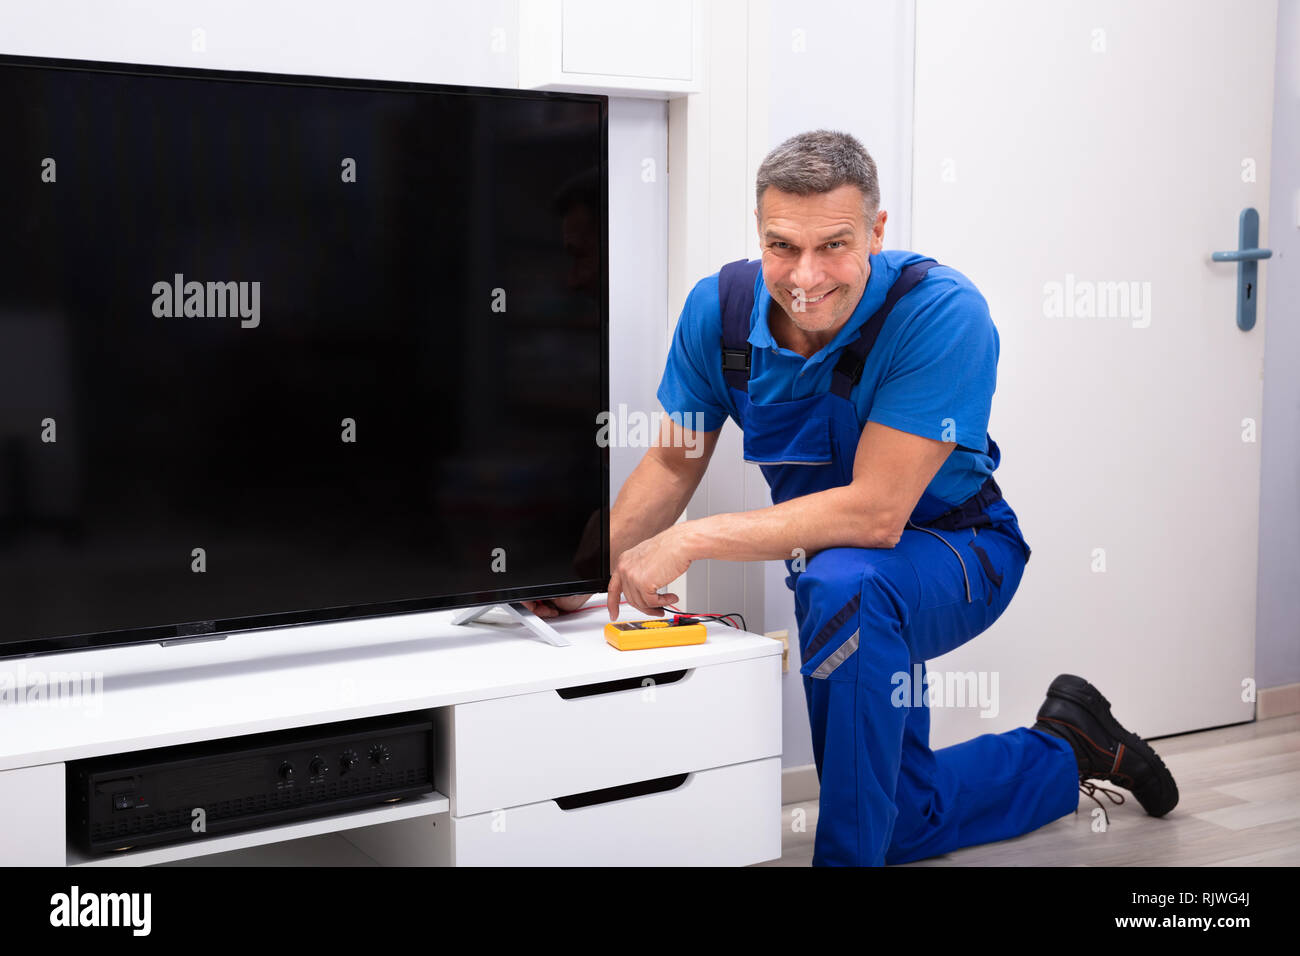 Reife männliche Techniker Reparatur Fernseher mit Digital Multimeter  Stockfotografie - Alamy